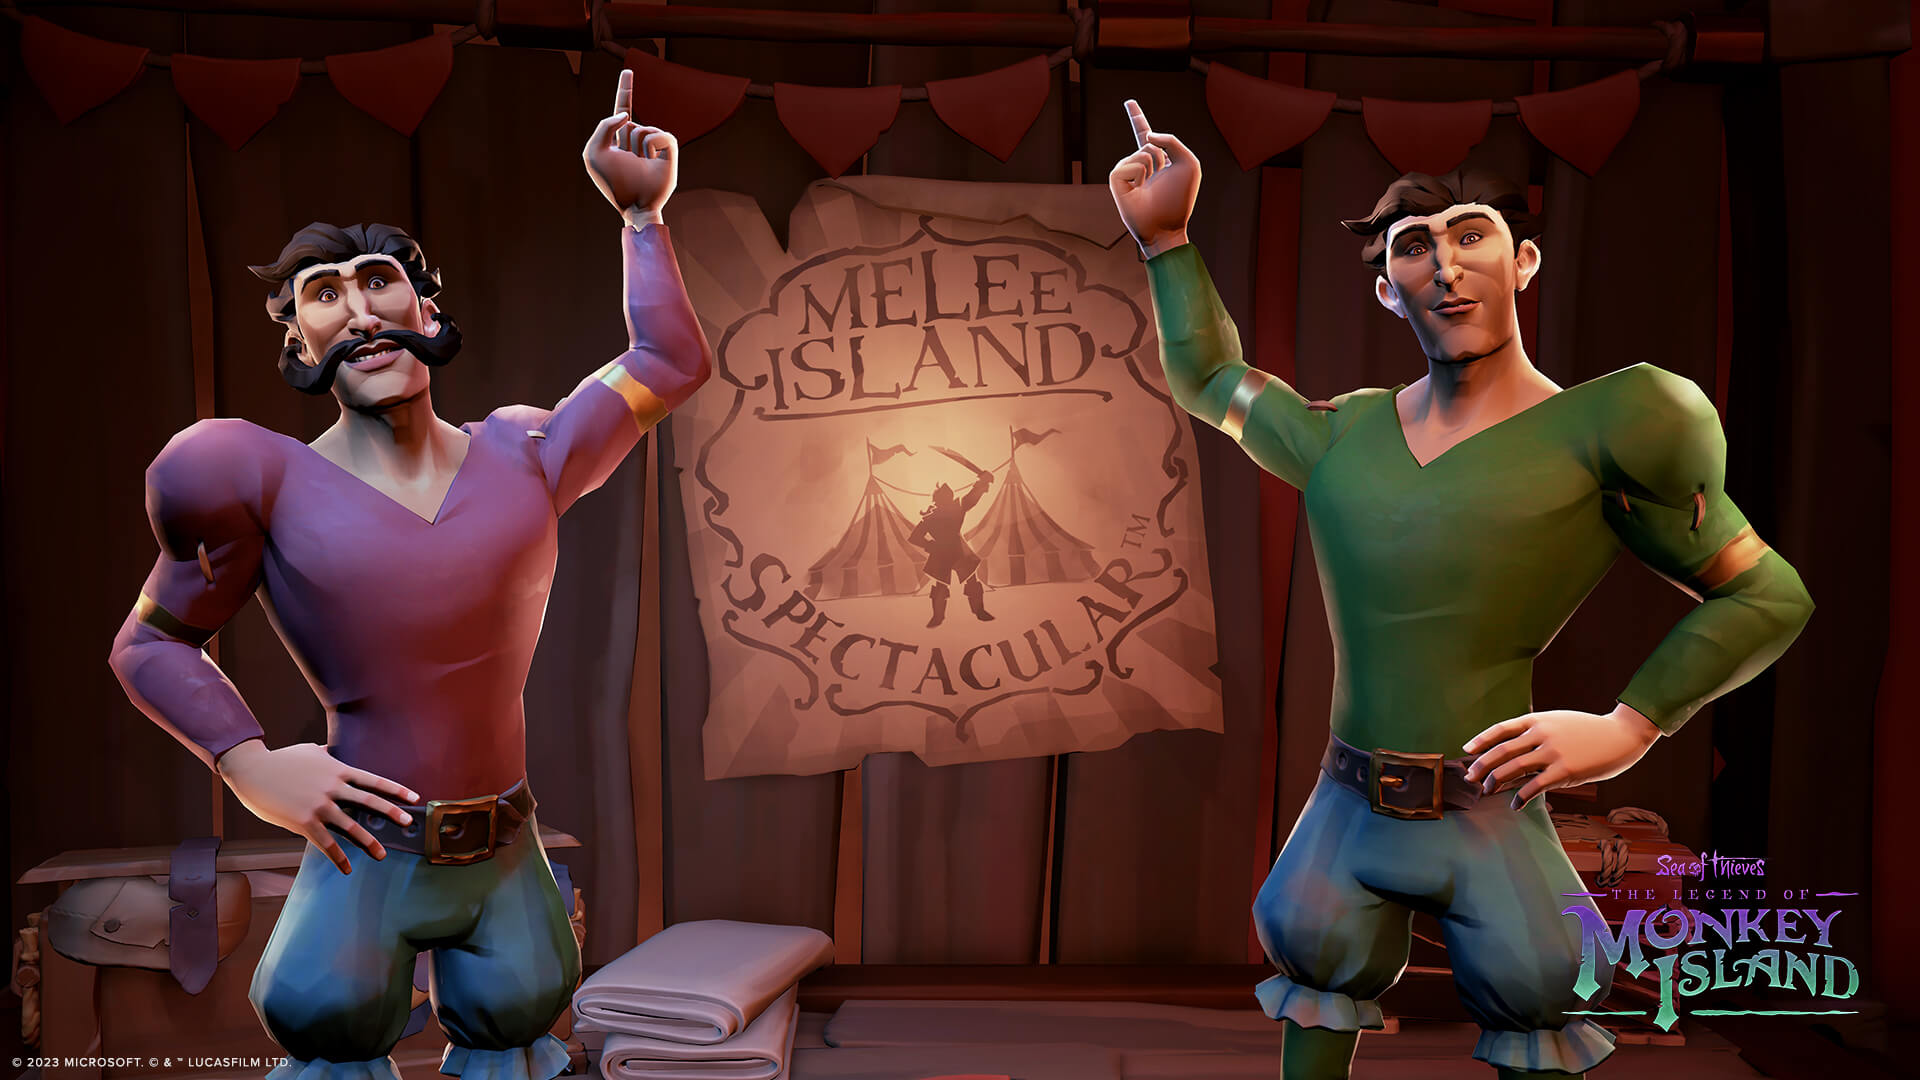 ビデオの対象『Sea of Thieves: The Legend of Monkey Island』の新たな物語「ガイブラシに捧げる冒険」がスタート